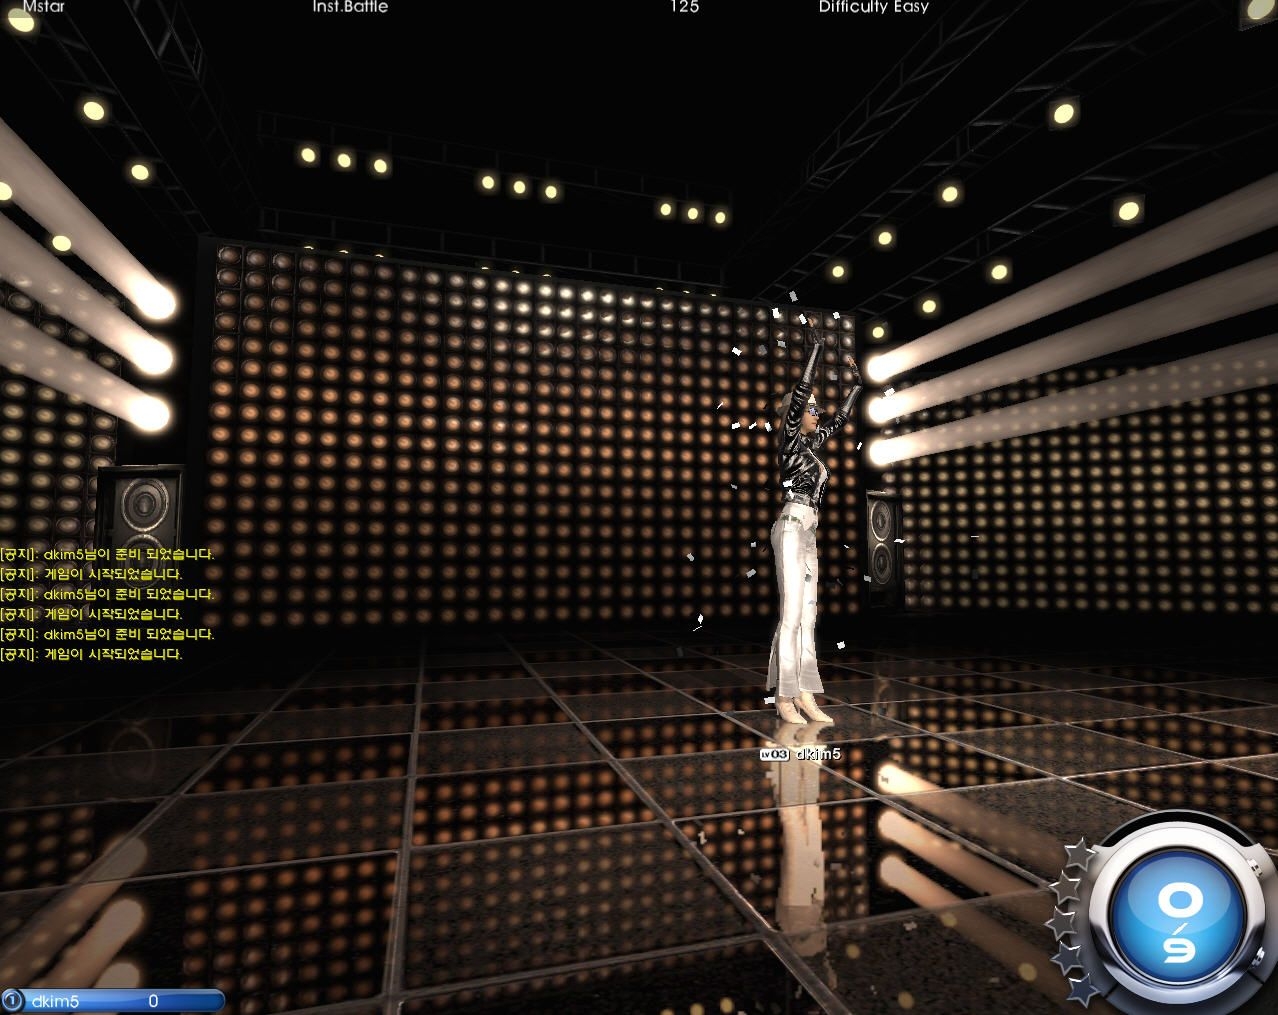 Скриншот из игры MStar под номером 23